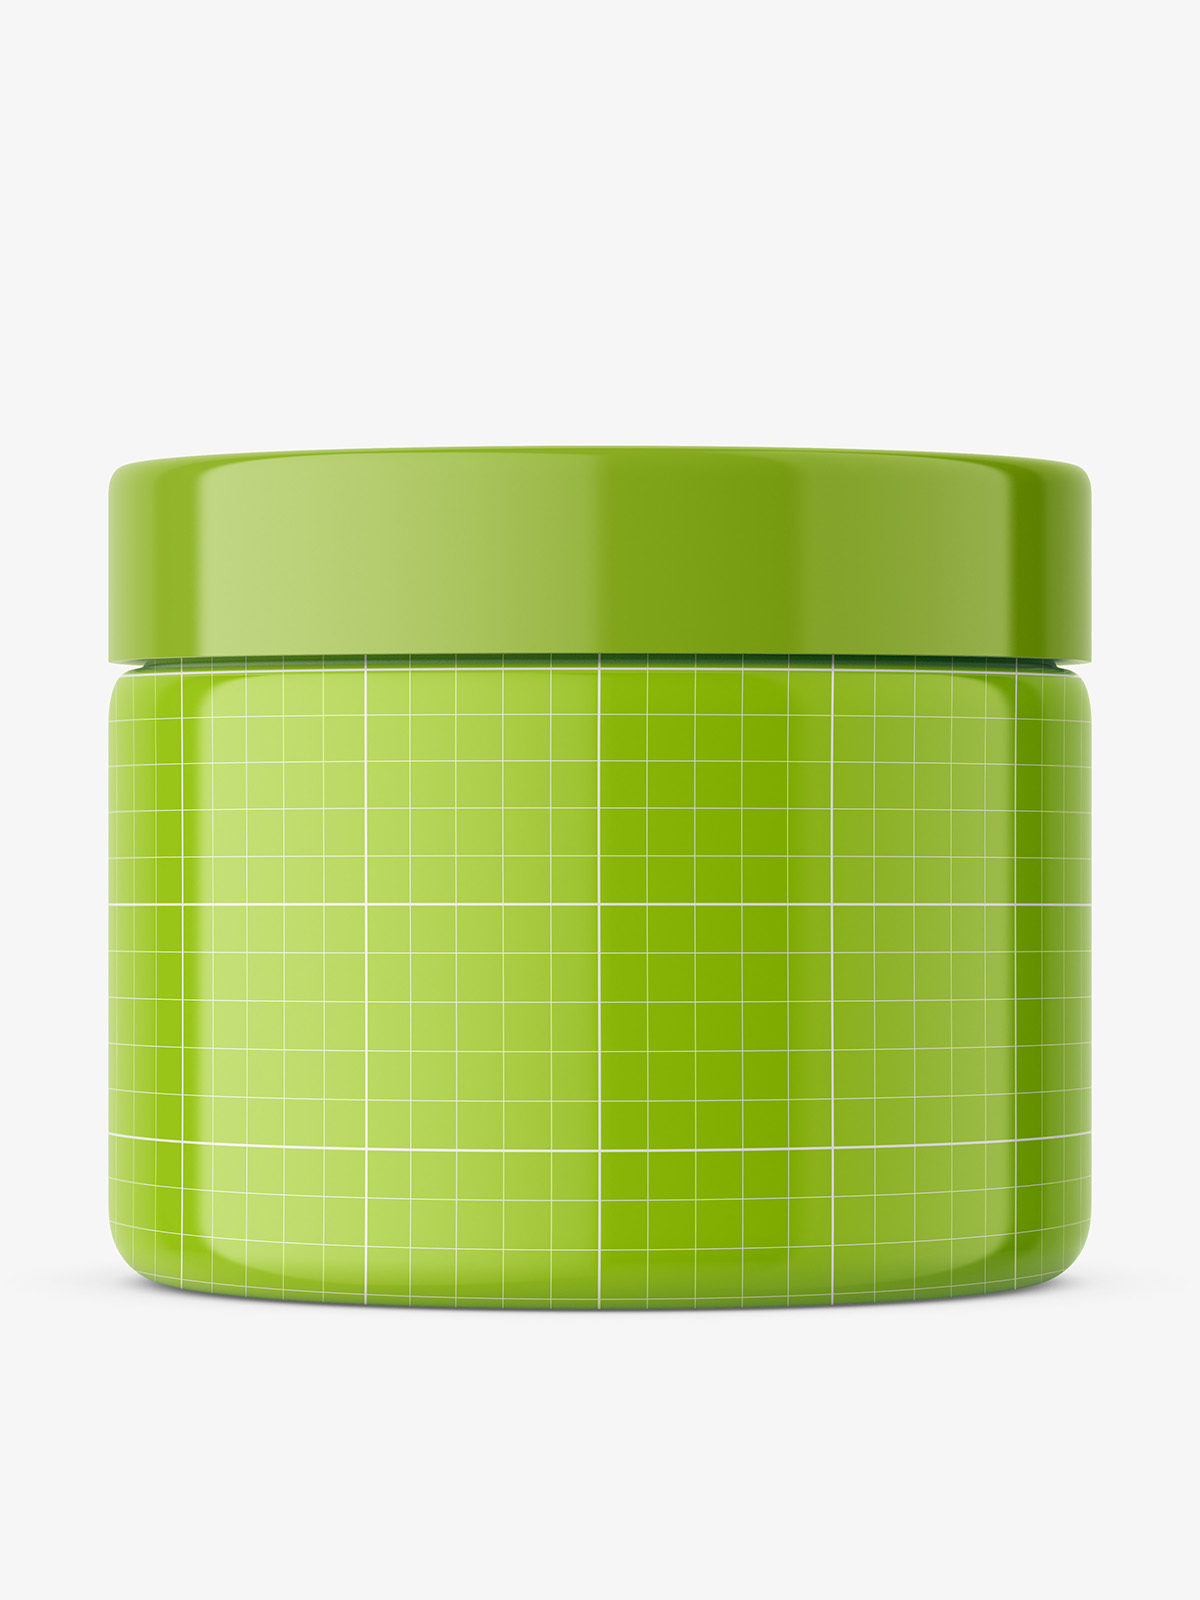 Download Plastic jar mockup - Smarty Mockups